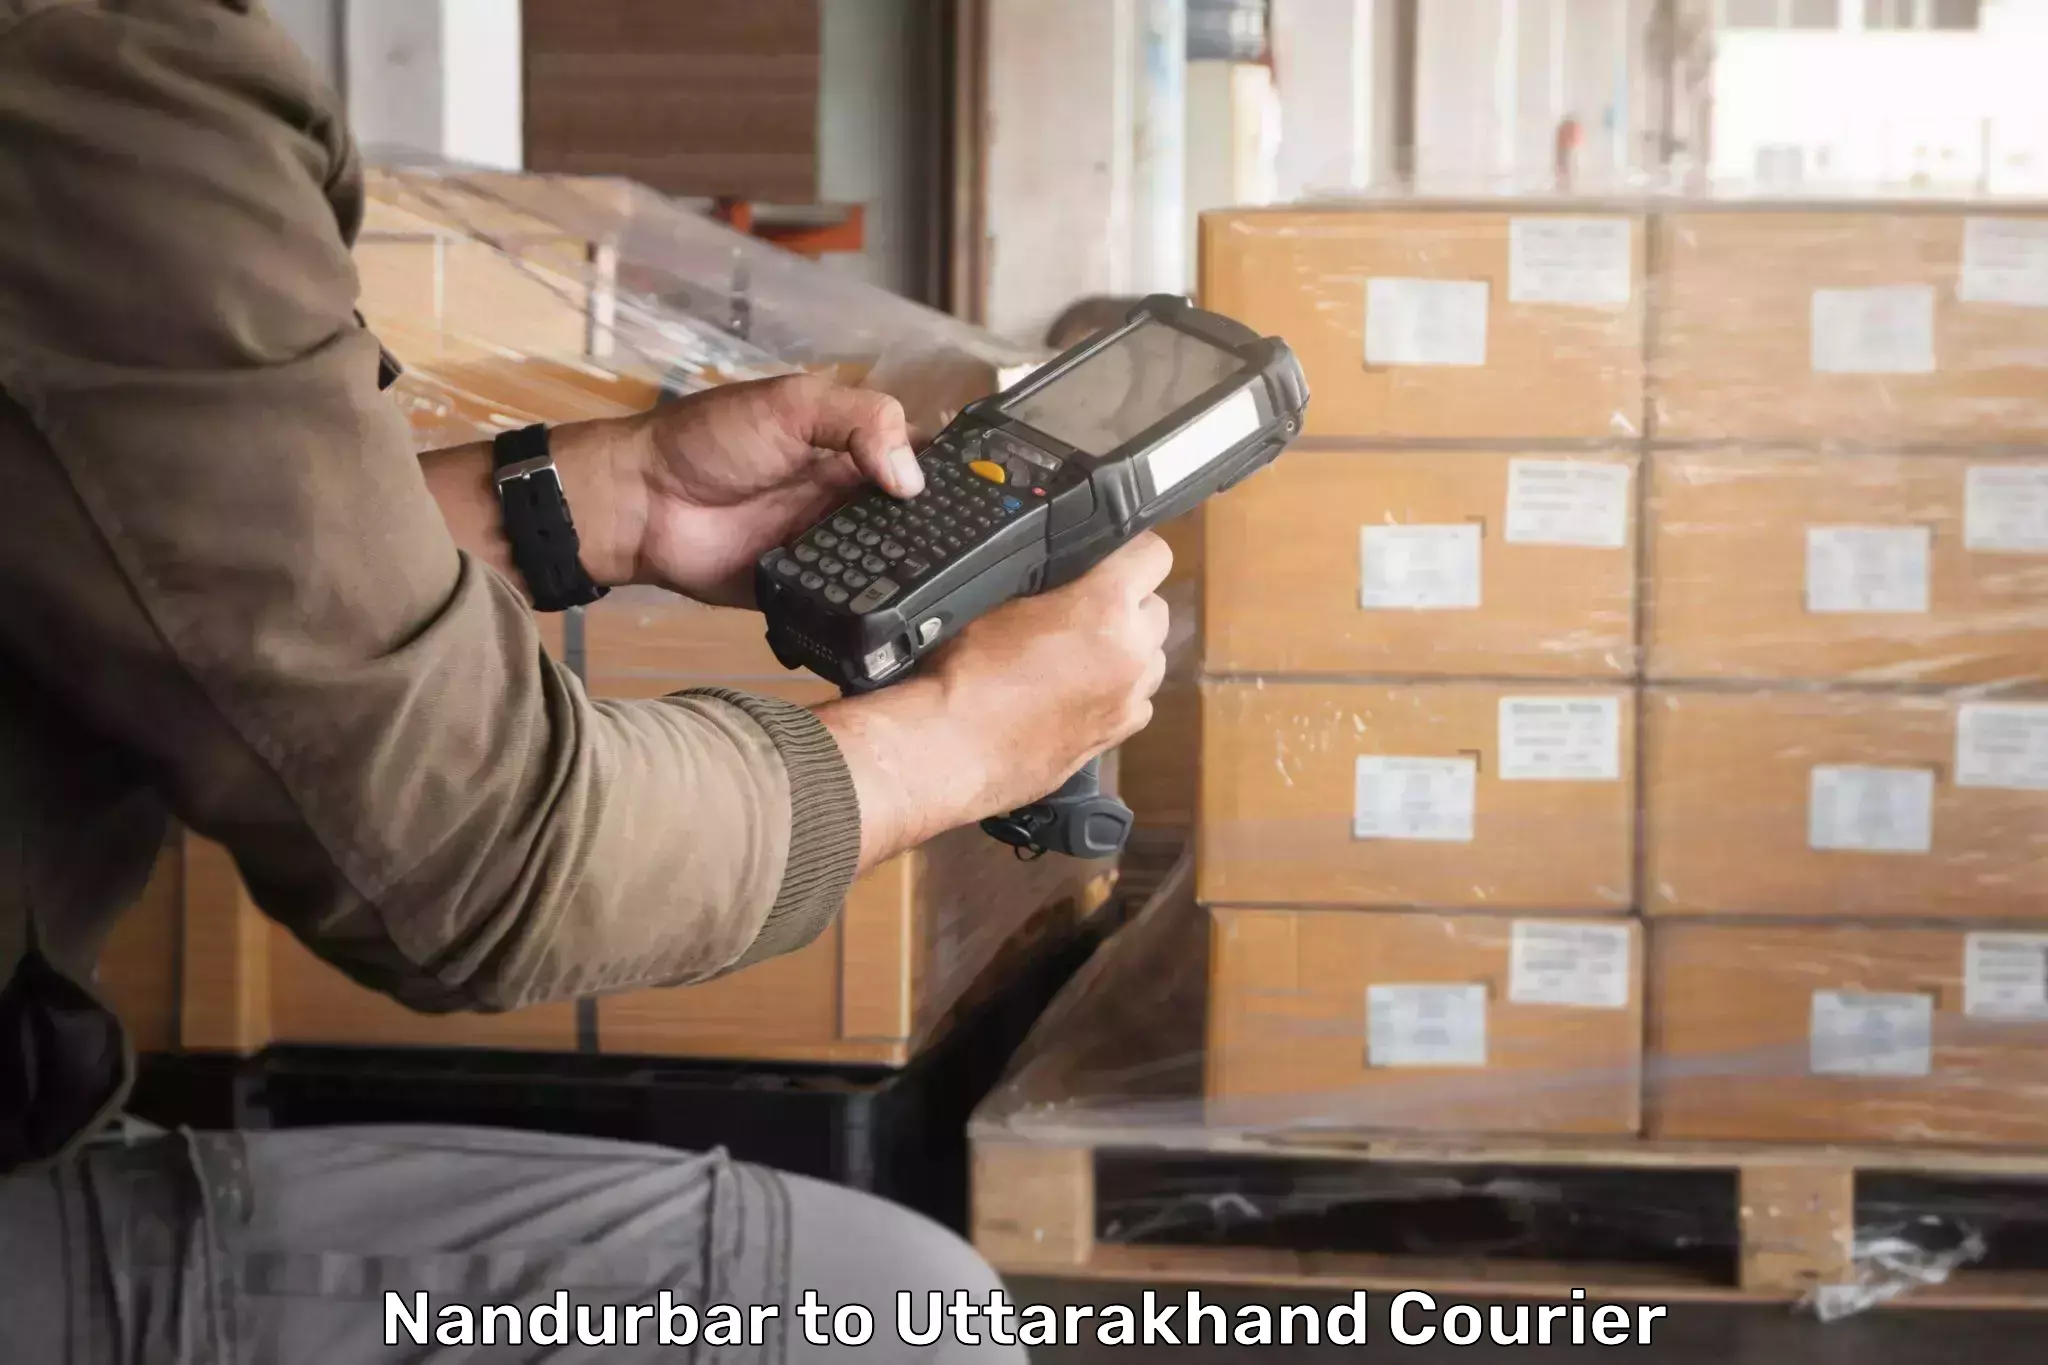 Tech-enabled shipping in Nandurbar to Khatima